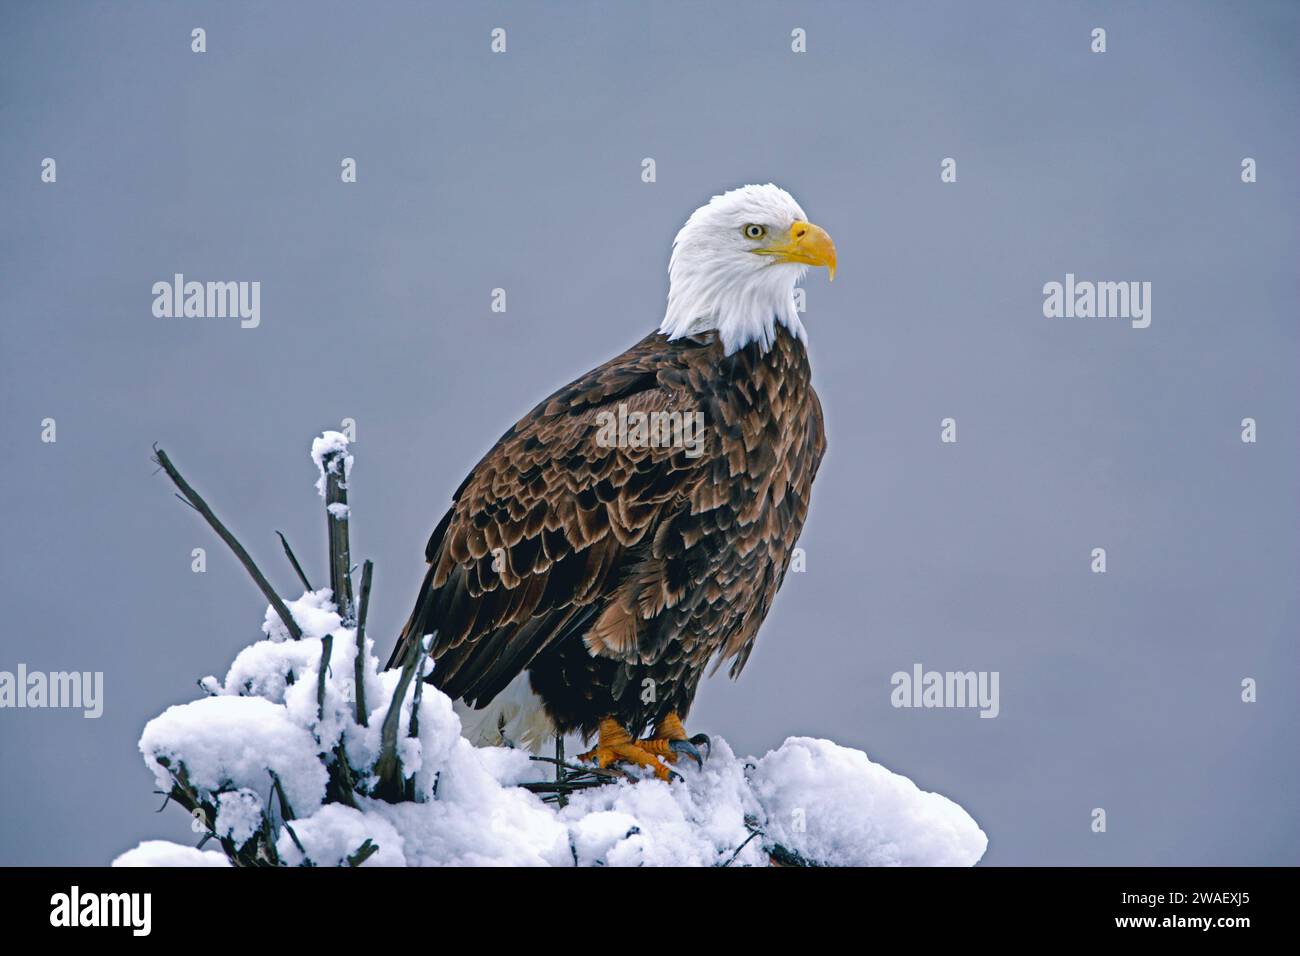 Weisskopfseeadler sitzt auf Baumwurzel in Schnee|Bald Eagle sitting in snow, watching Stock Photo